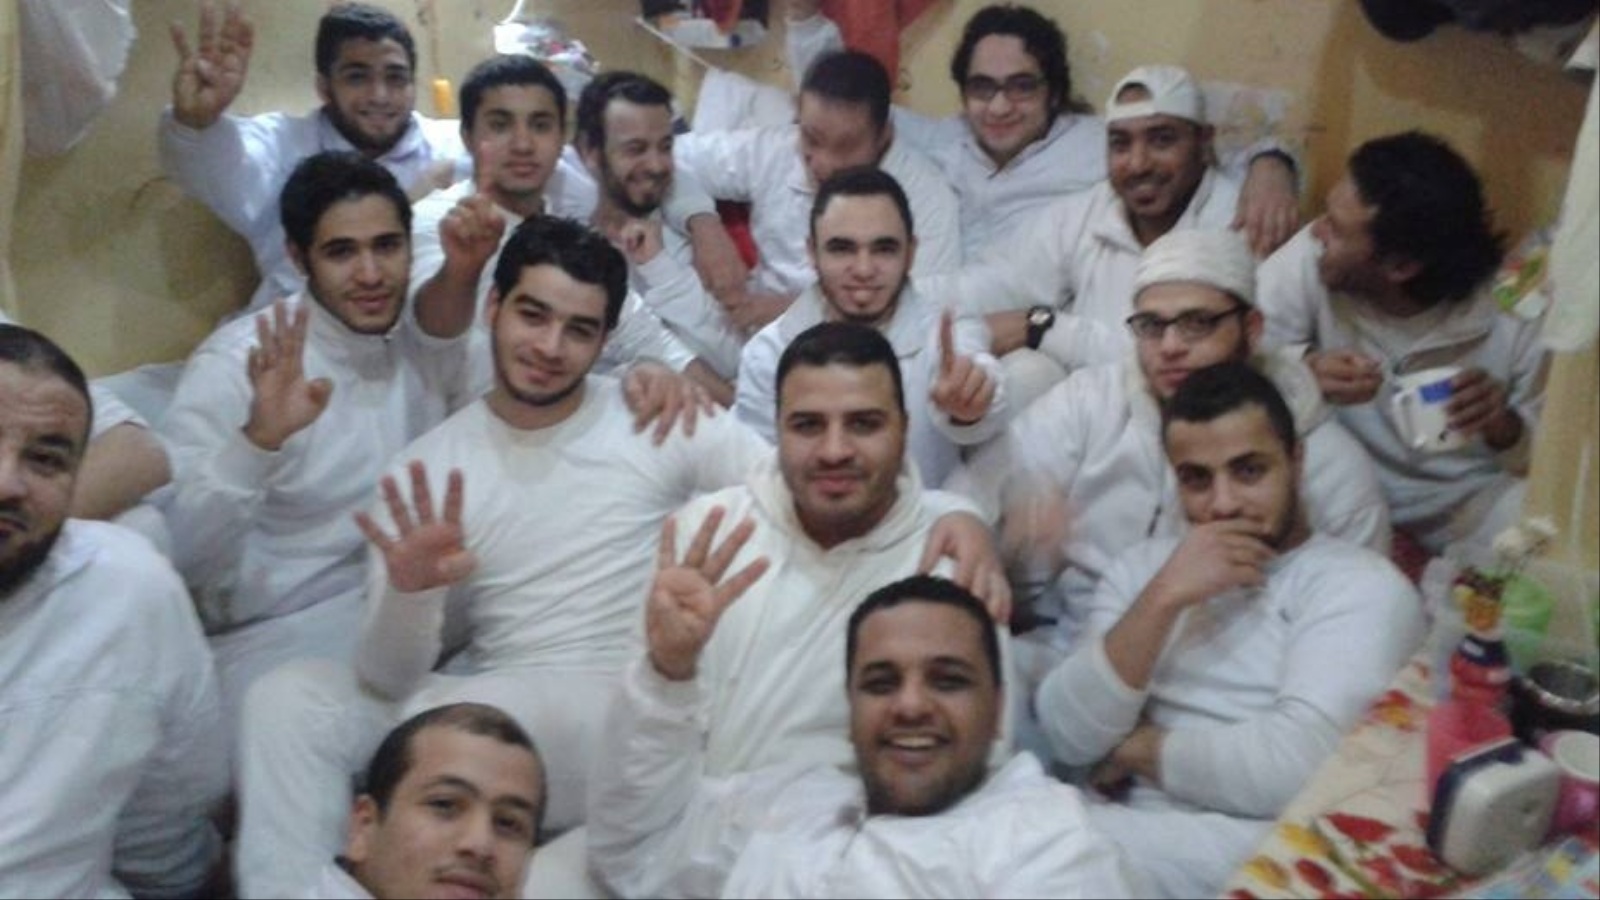 ‪مجموعة من المعتقلين بأحد السجون المصرية‬ مجموعة من المعتقلين بأحد السجون المصرية (مواقع التواصل)